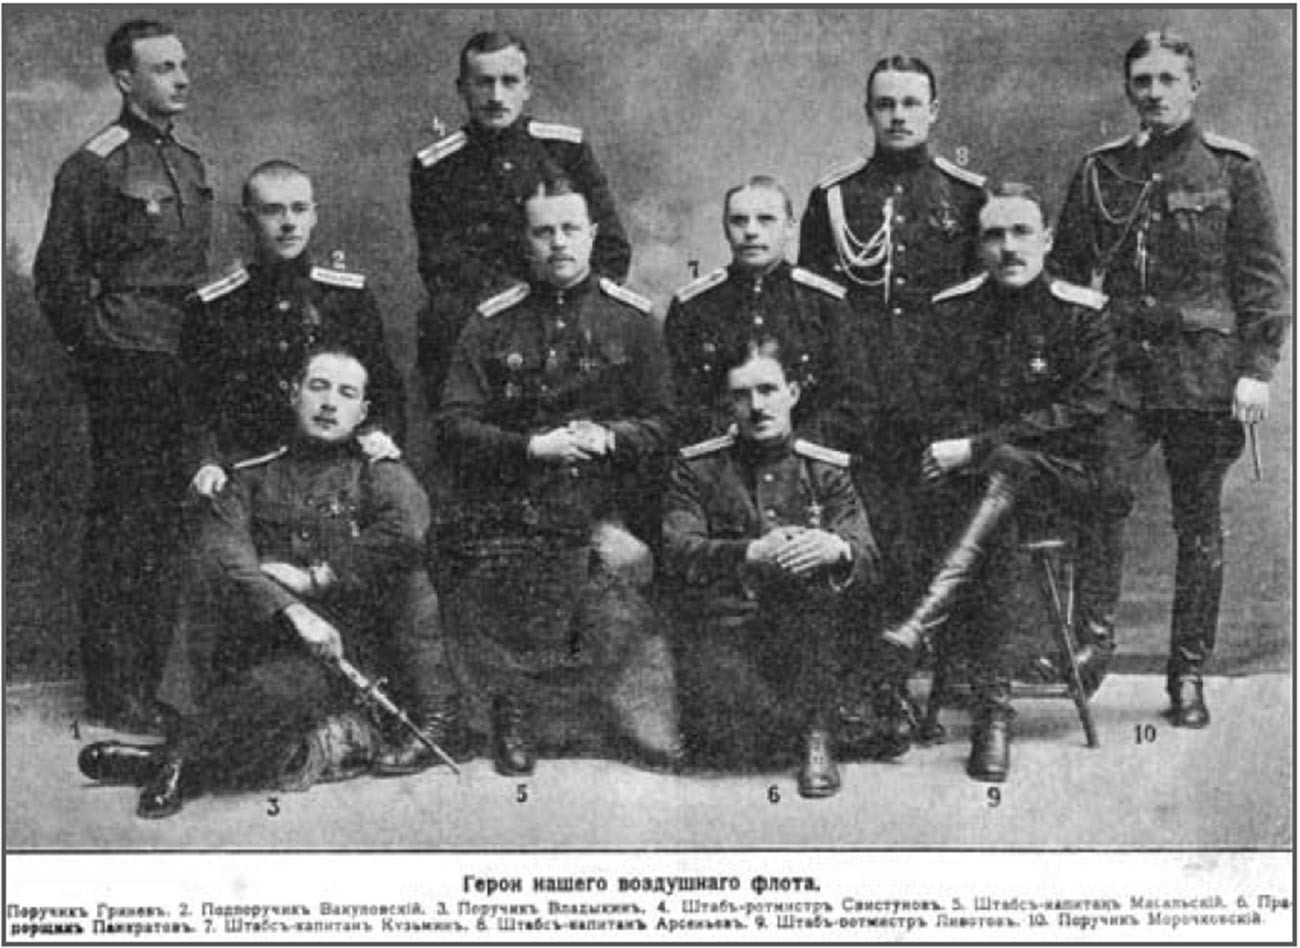 Онисим Панкратов (сидит в первом ряду, центр) на групповом фото летчиков-героев авиации Российской Империи